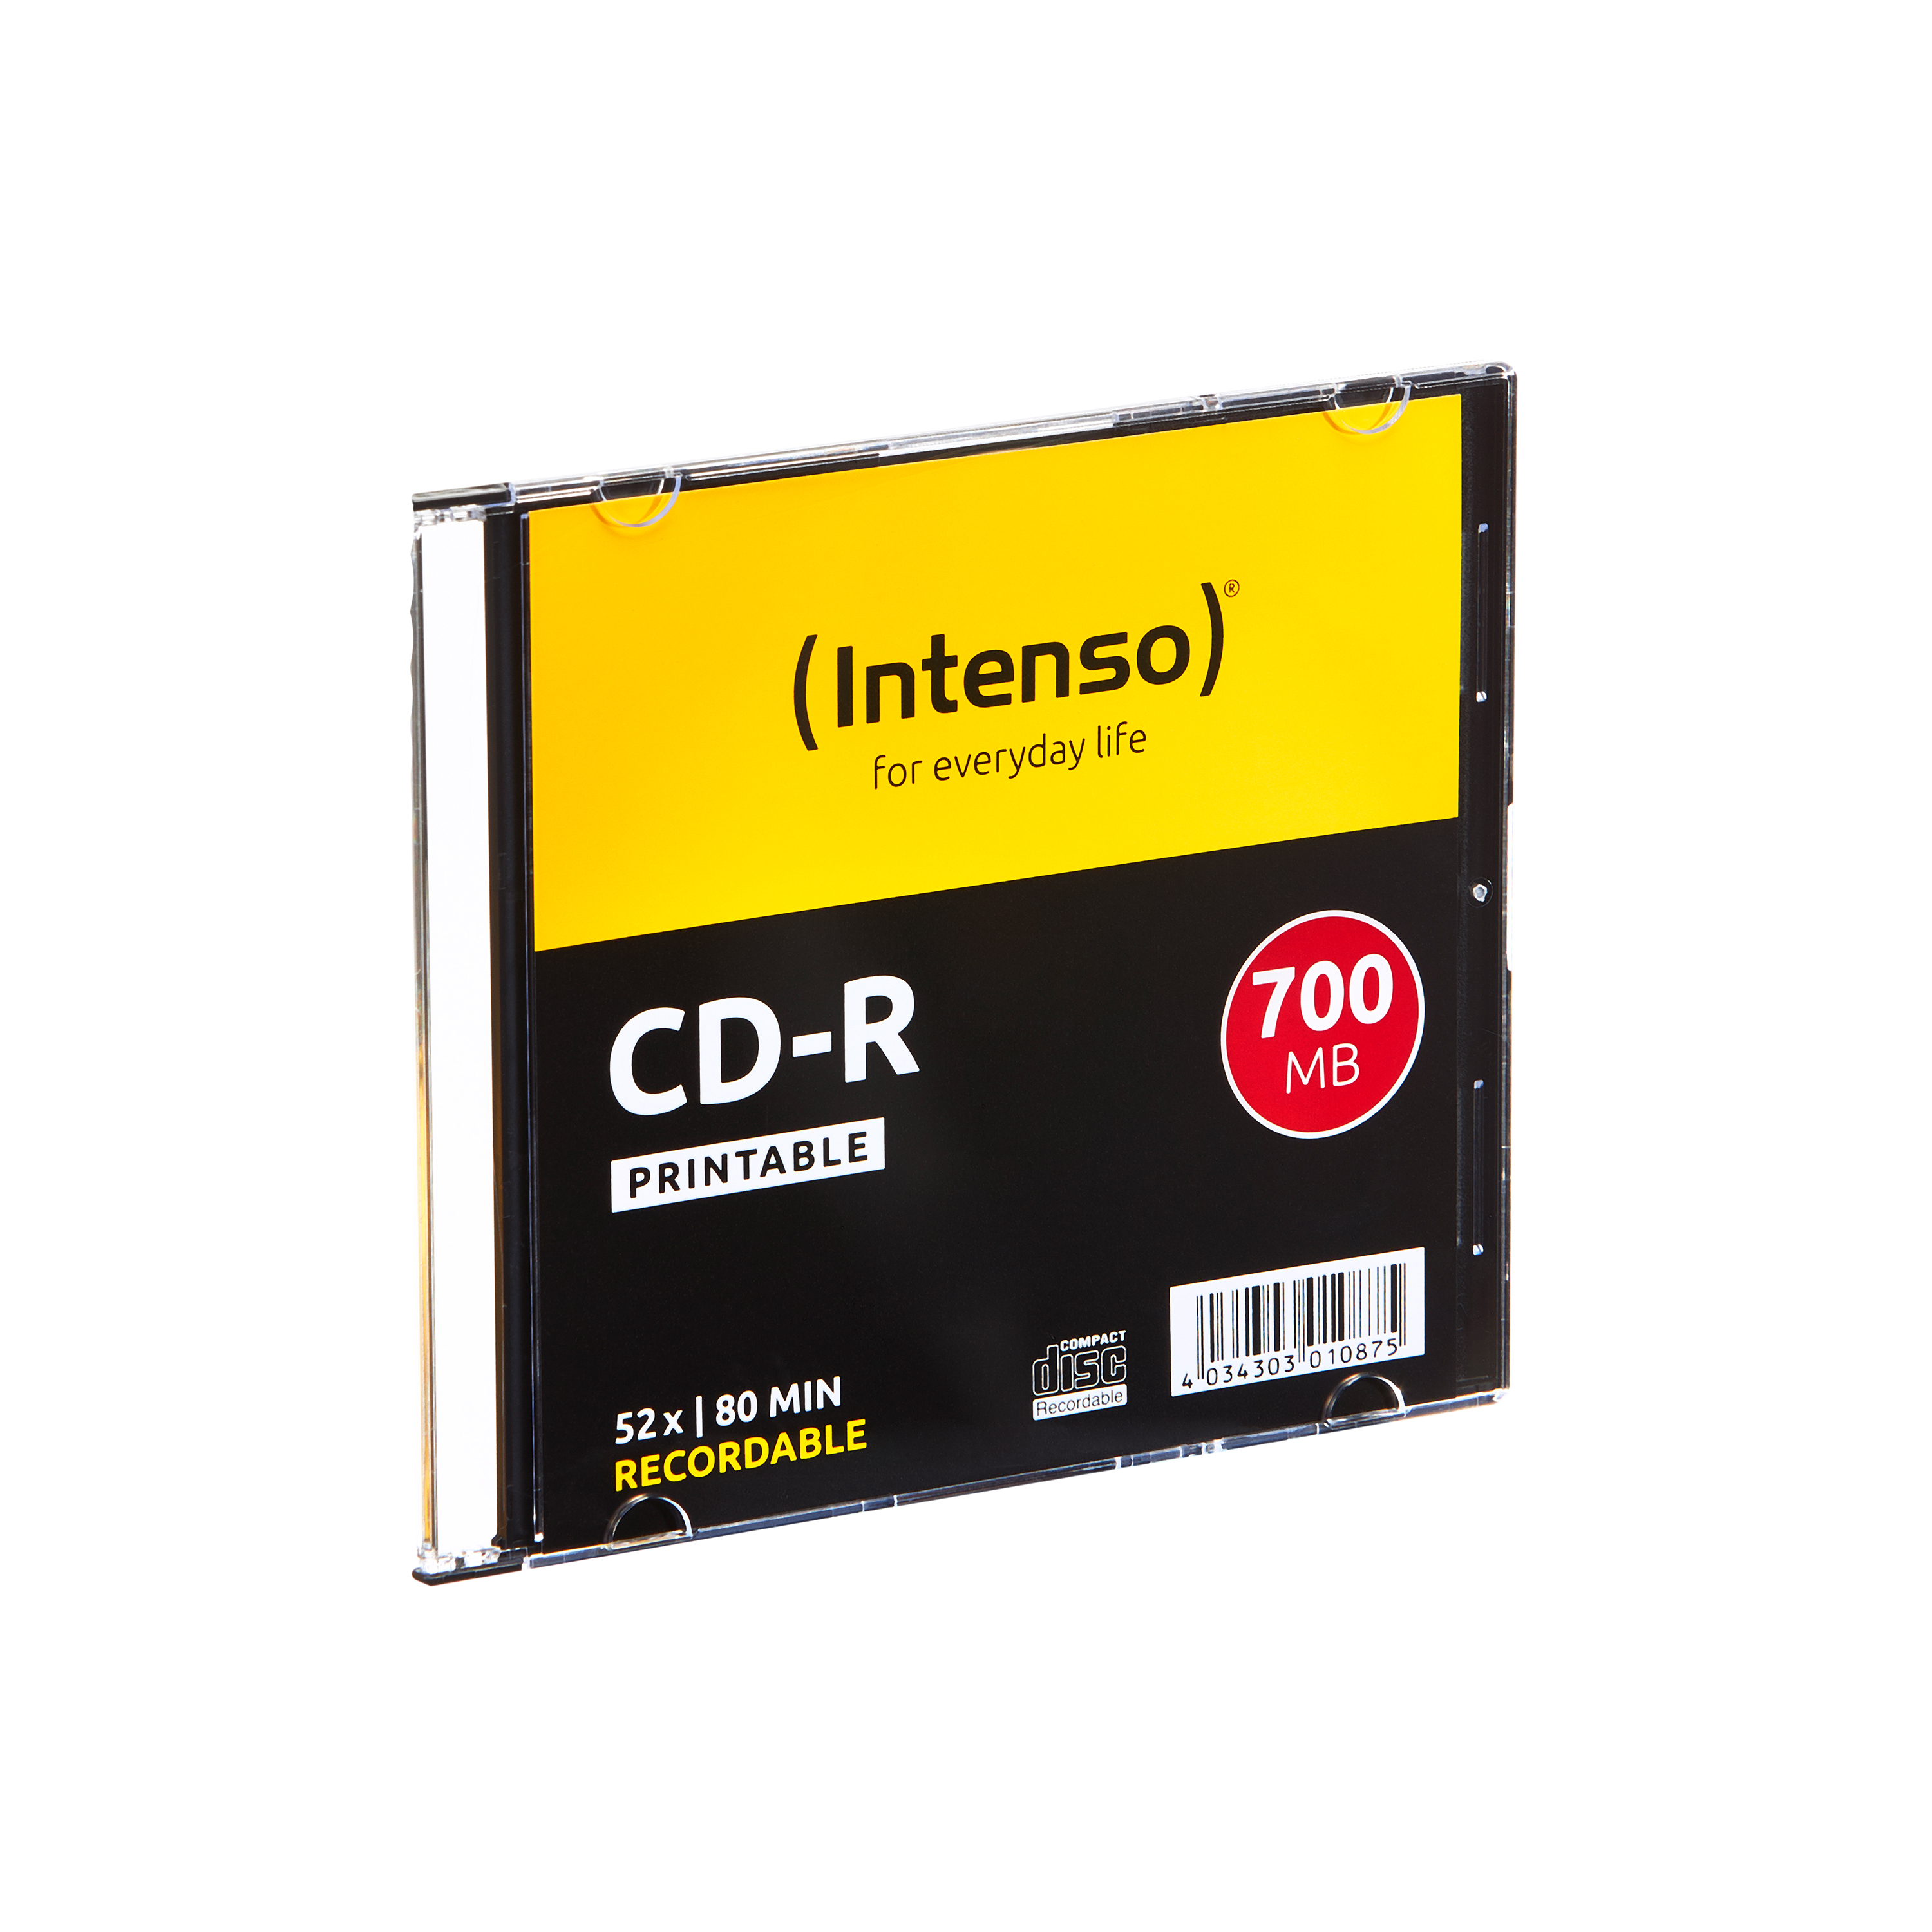 CD-R INTENSO 10er Bedruckbar Pack Slim CD-R Case